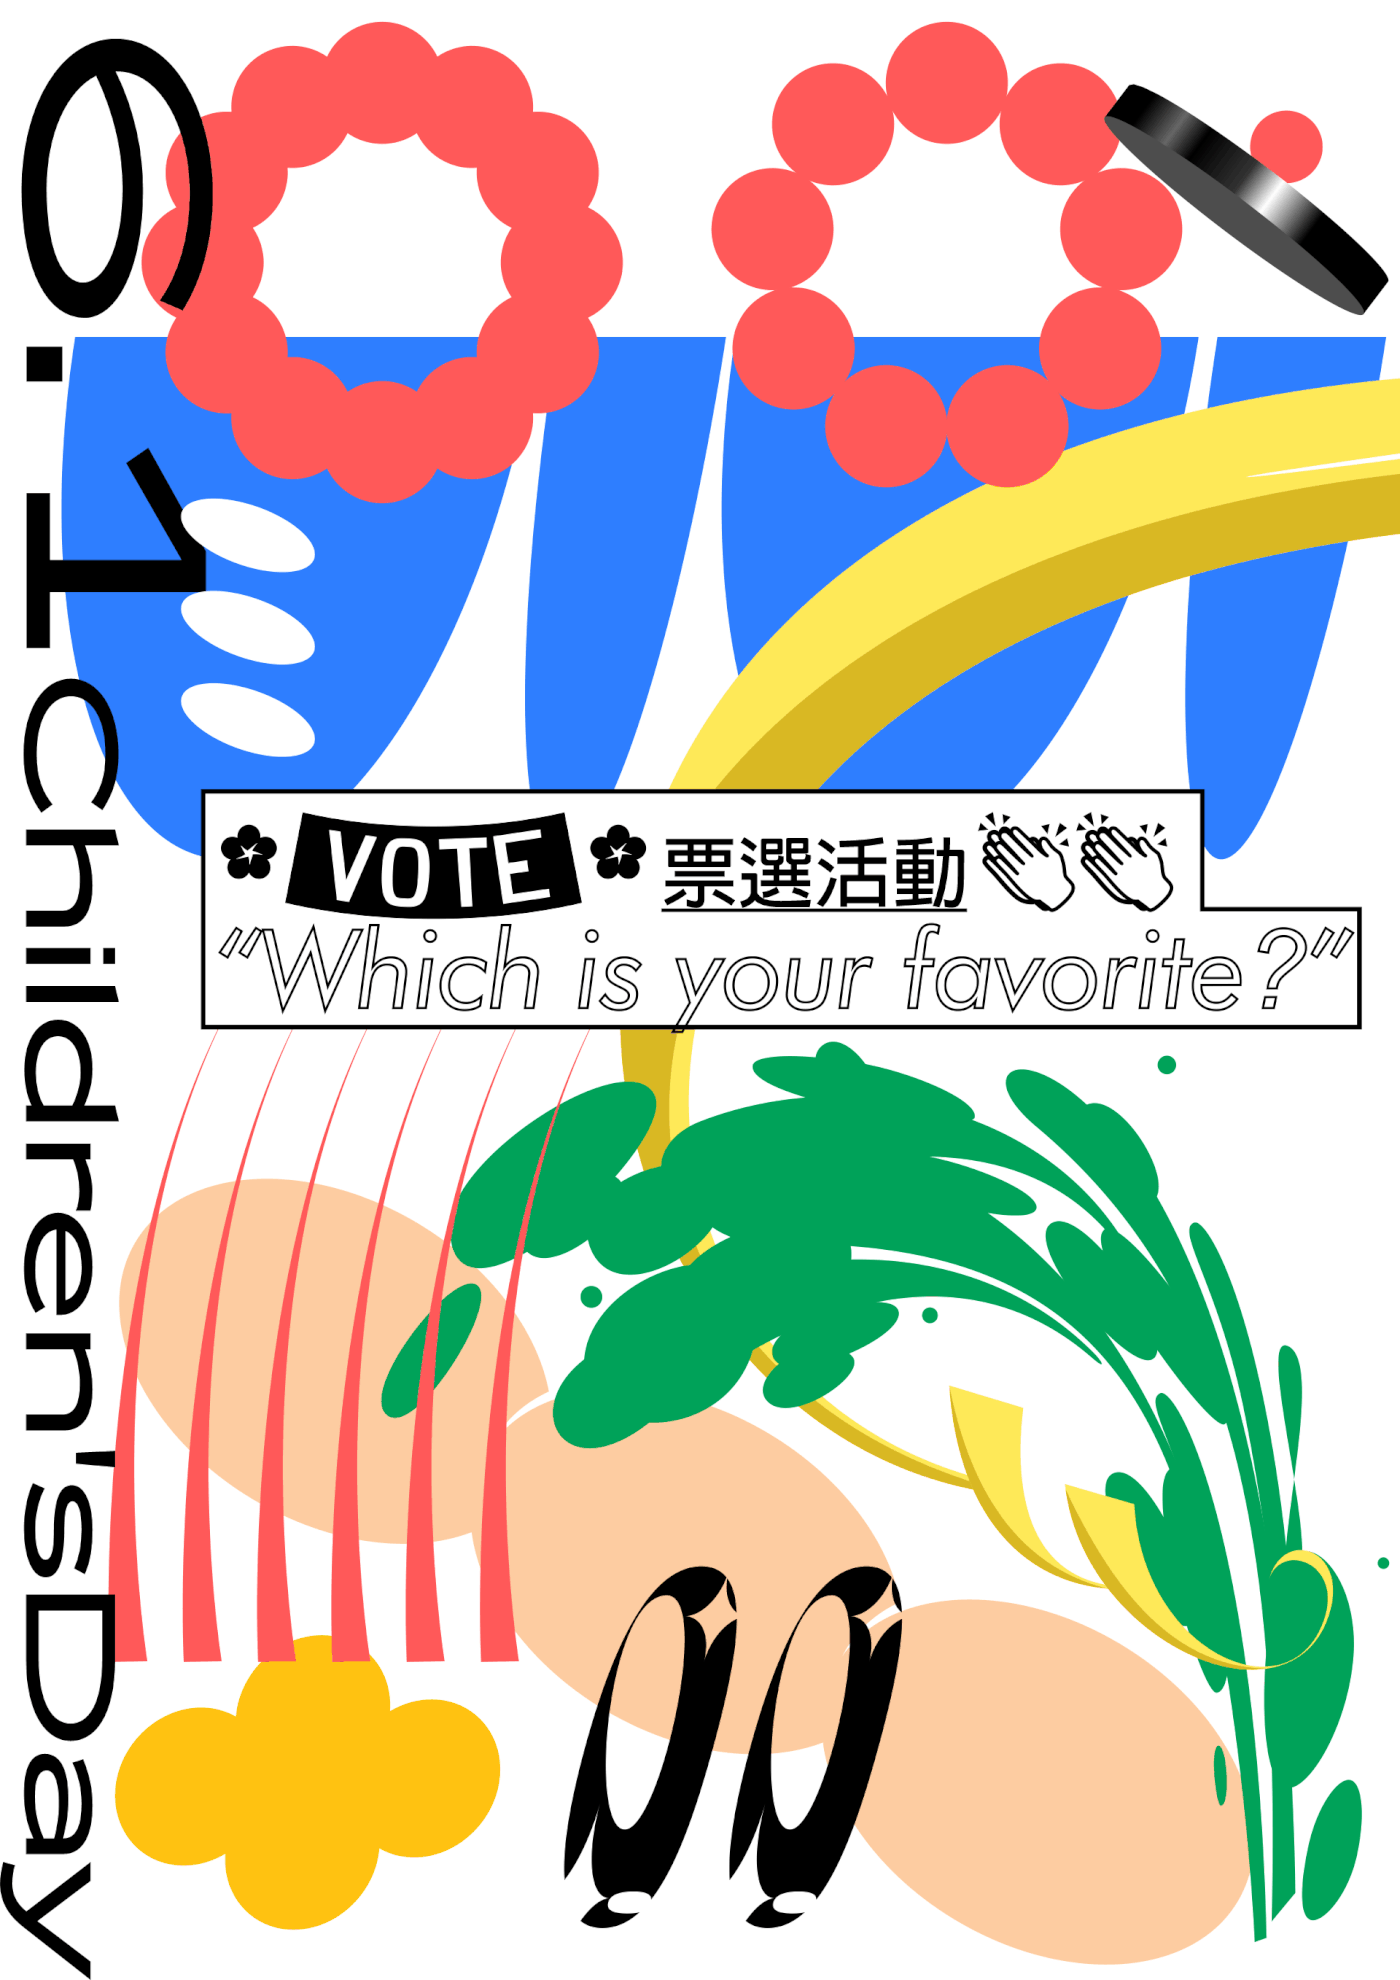 海报 儿童节 Children’s Day vote poster graphic ILLUSTRATION  design festival cartoon